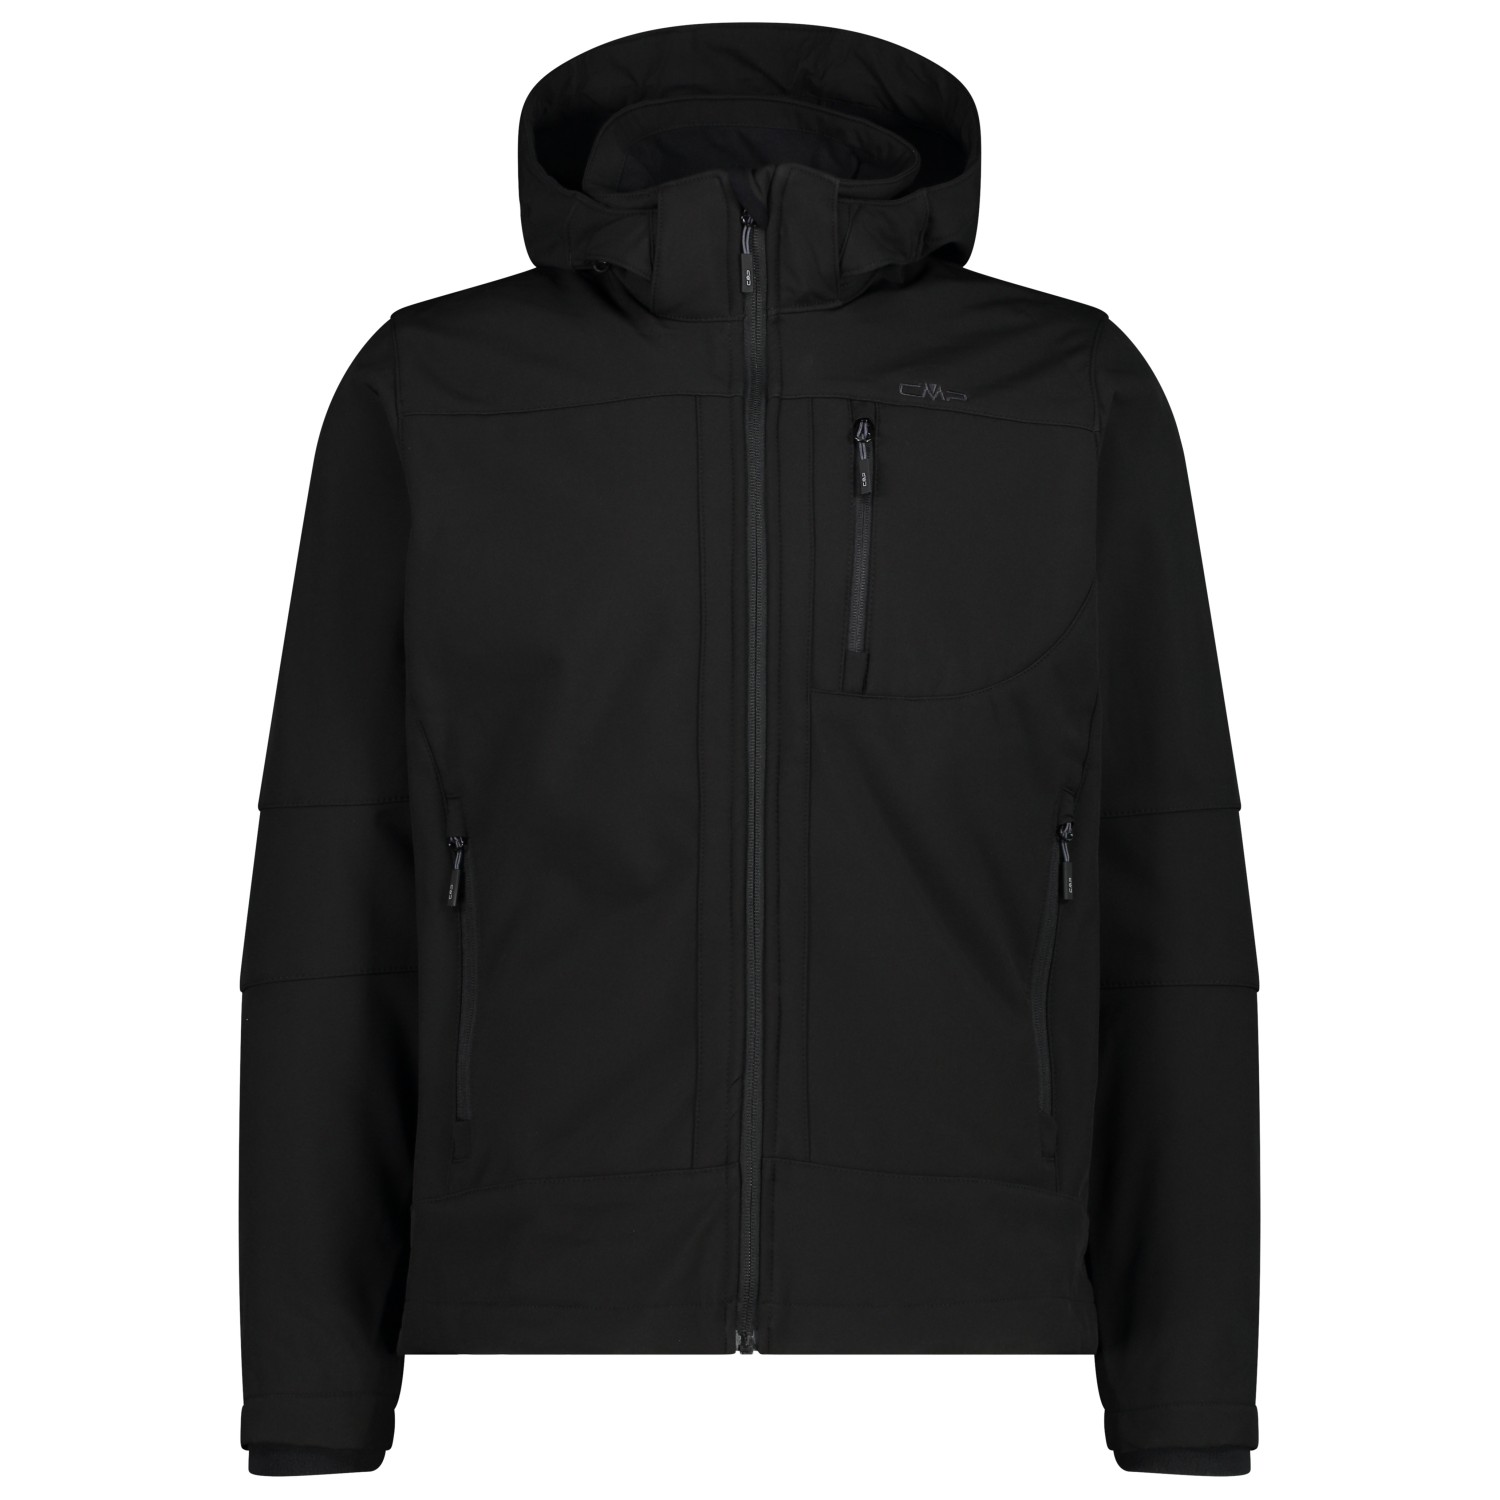 Куртка из софтшелла Cmp Jacket Zip Hood Softshell, цвет Nero двойная куртка cmp jacket zip hood detachable inner taslan цвет nero